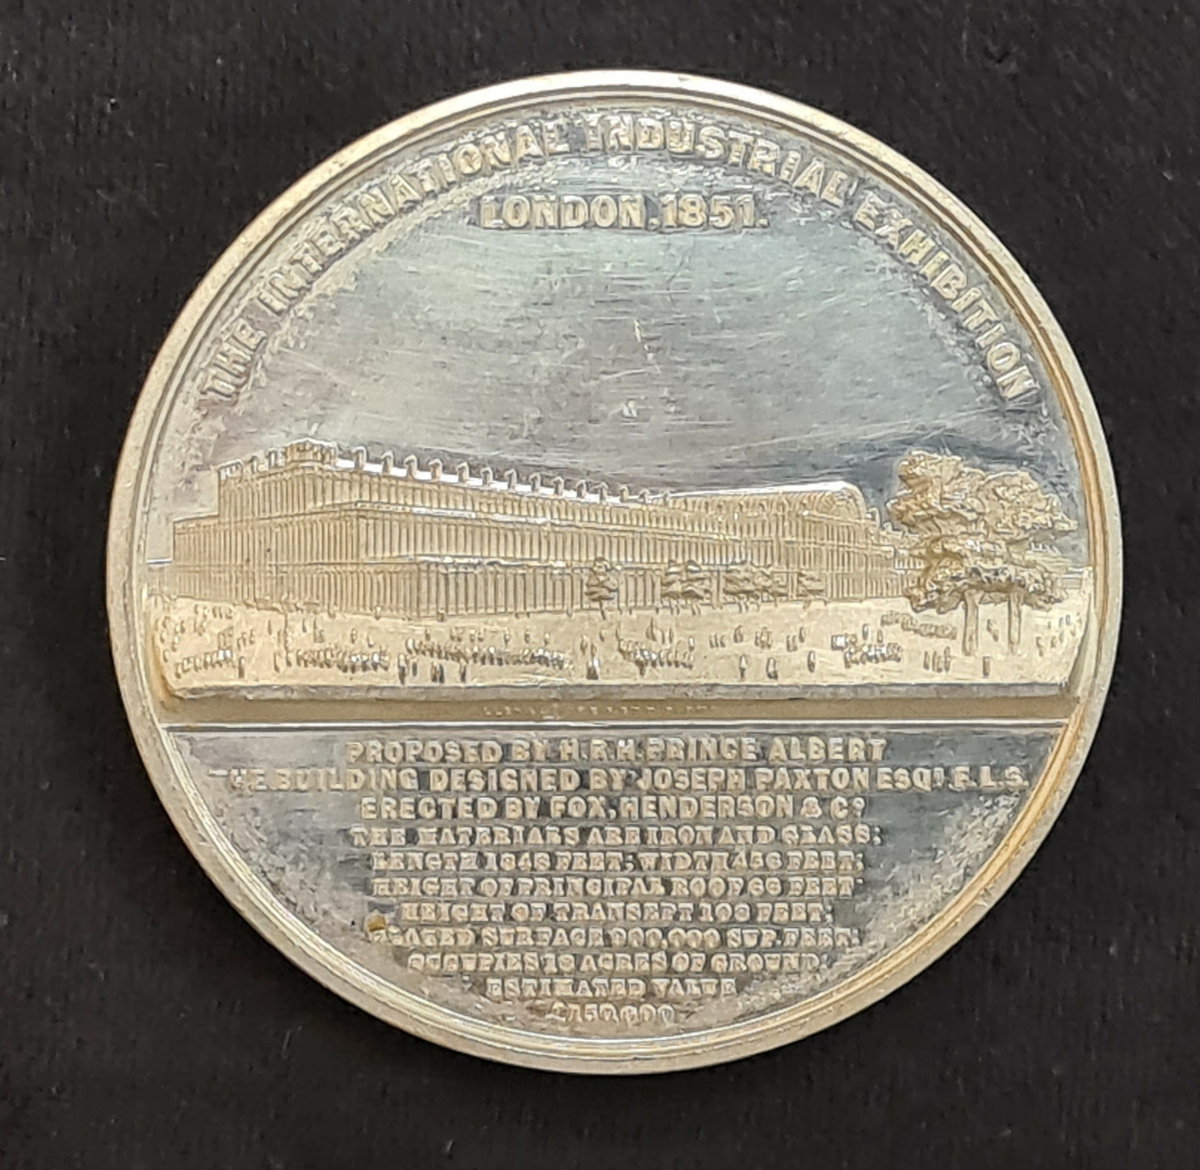 Medalj från Världsutställningen i London år 1851.
Präglingen visar Crystal Palace.